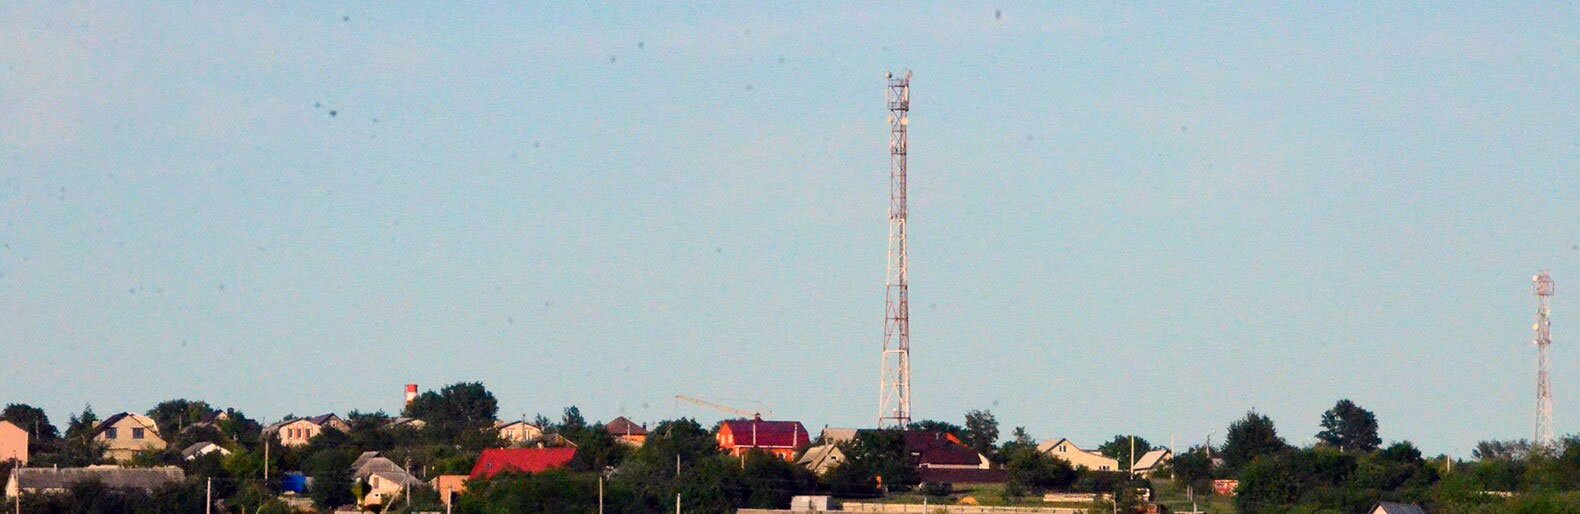 В сёлах Белгородской области в этом году установили 27 новых базовых станций сотовой связи 